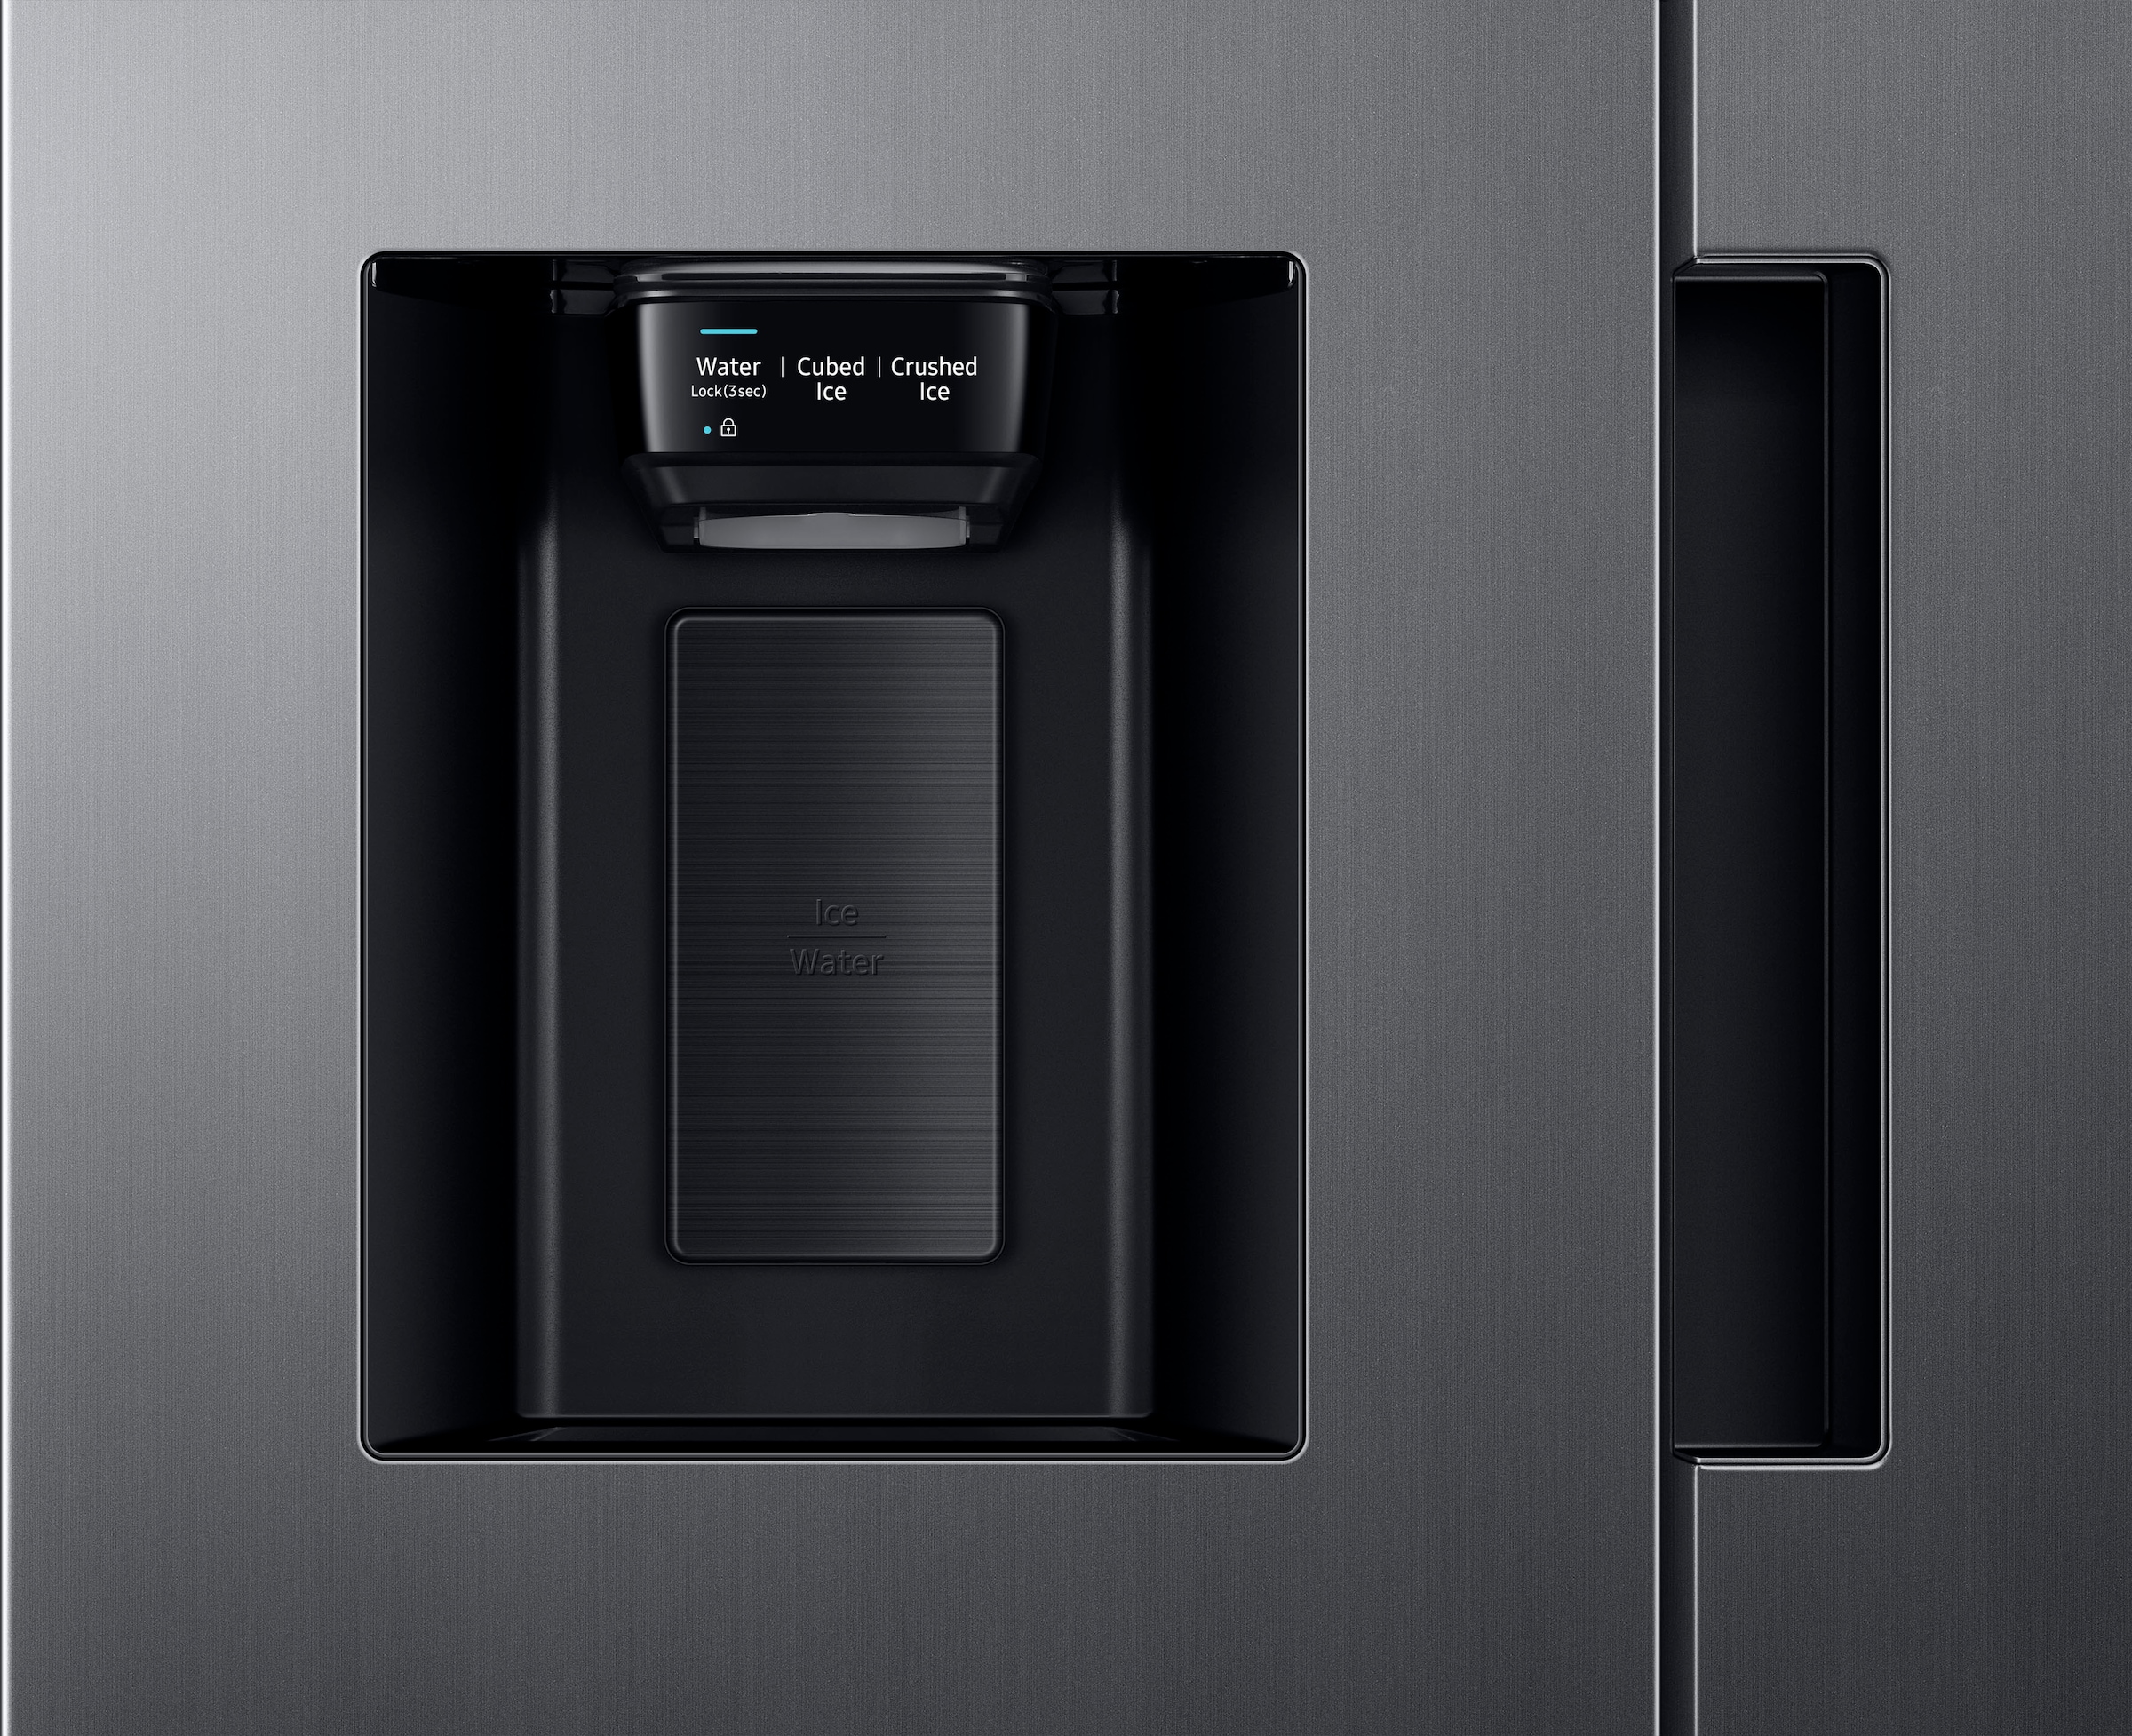 Samsung Side-by-Side »RS6JA8811«, RS6JA8811S9, 178 cm hoch, 91,2 cm breit, mit Festwasseranschluss